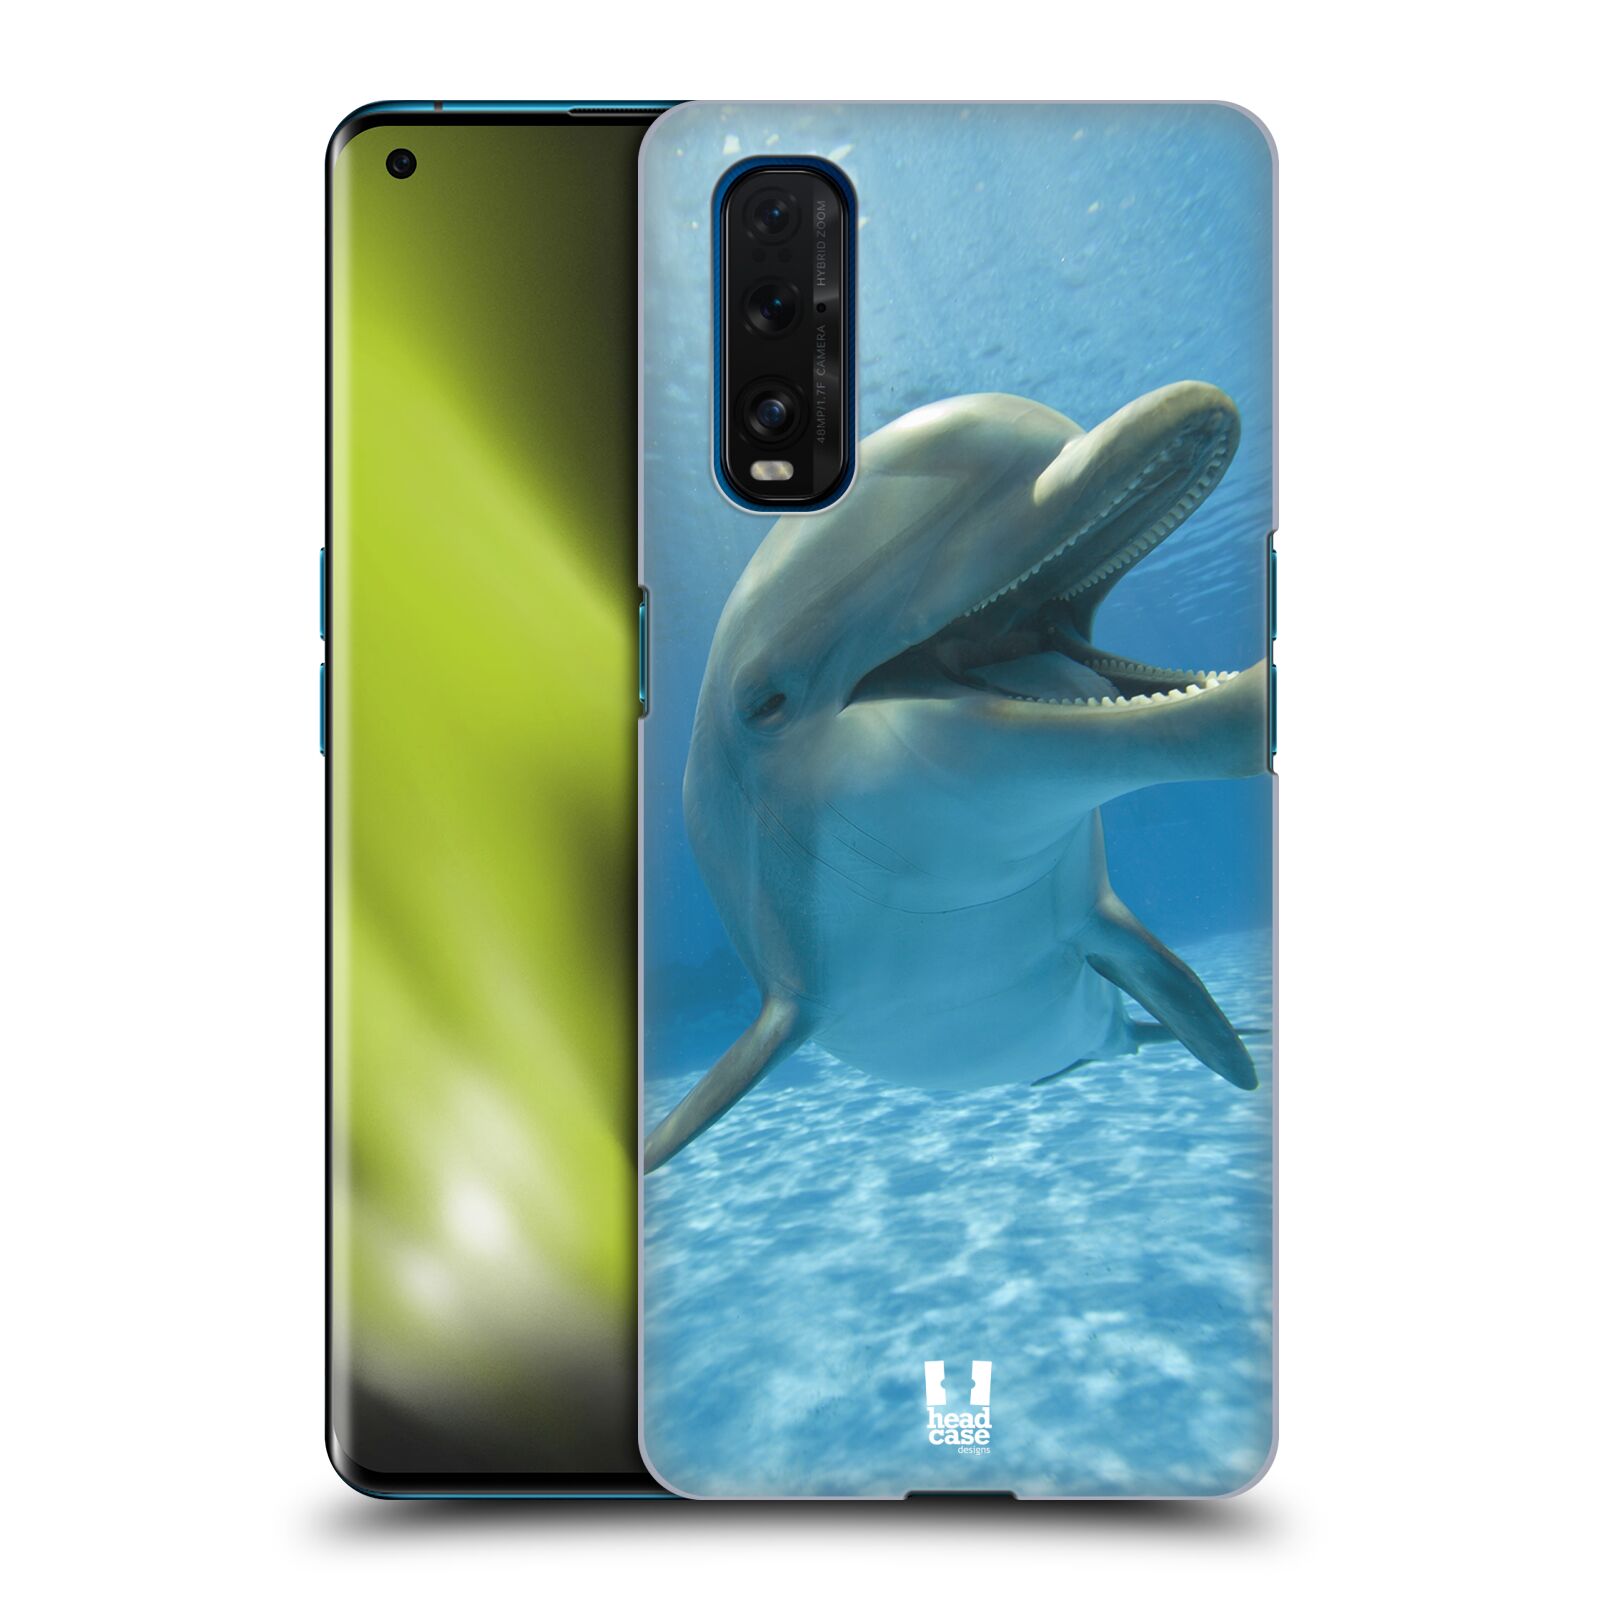 Zadní obal pro mobil Oppo Find X2 - HEAD CASE - Svět zvířat delfín v moři